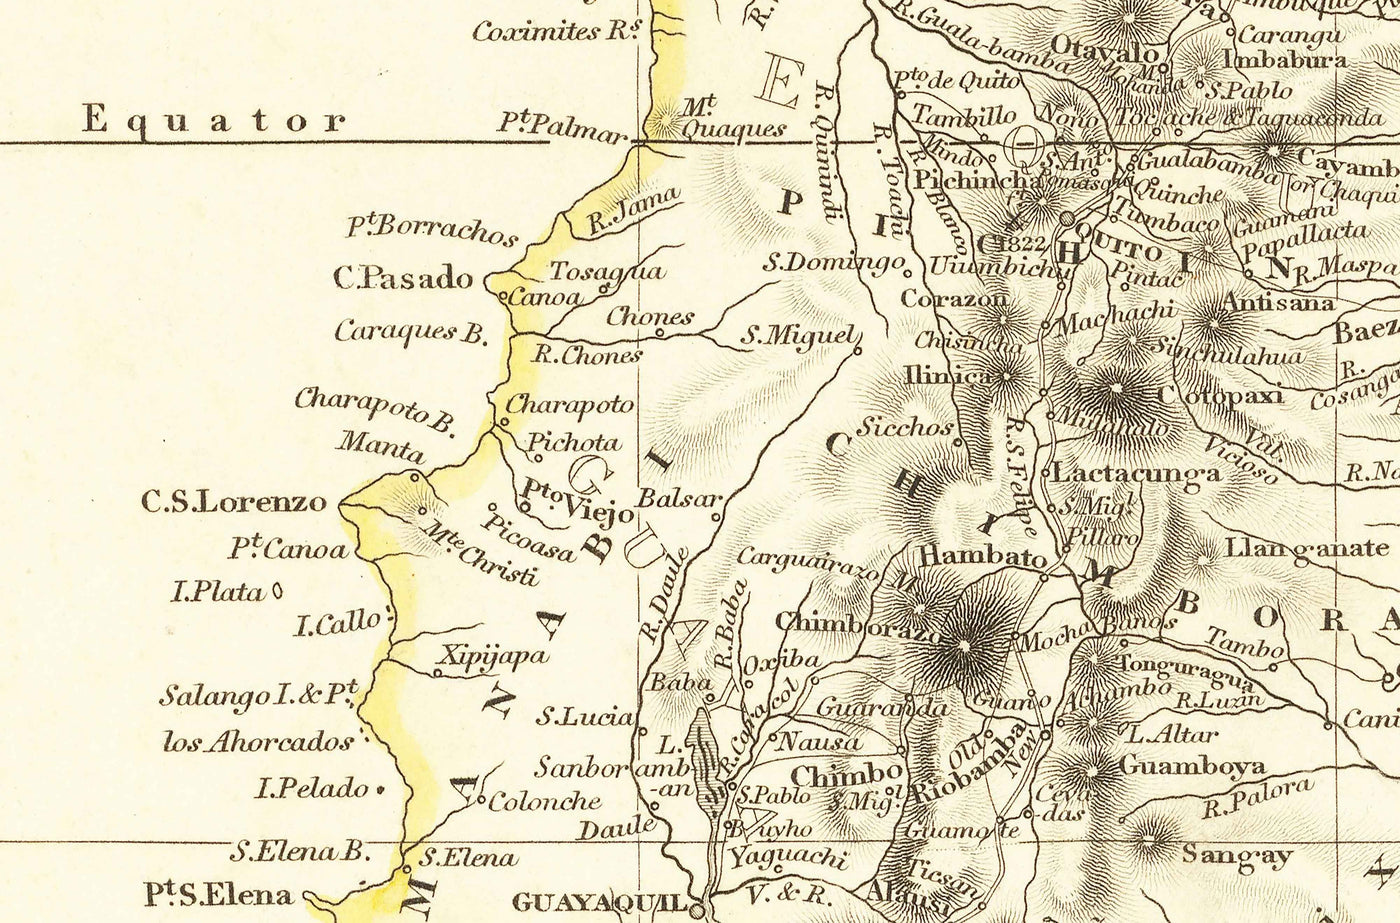 Ancienne carte de la Colombie, 1834 par Arrowsmith - Grande Colombie, Venezuela, Equateur, Pérou, Caraïbes, Panama